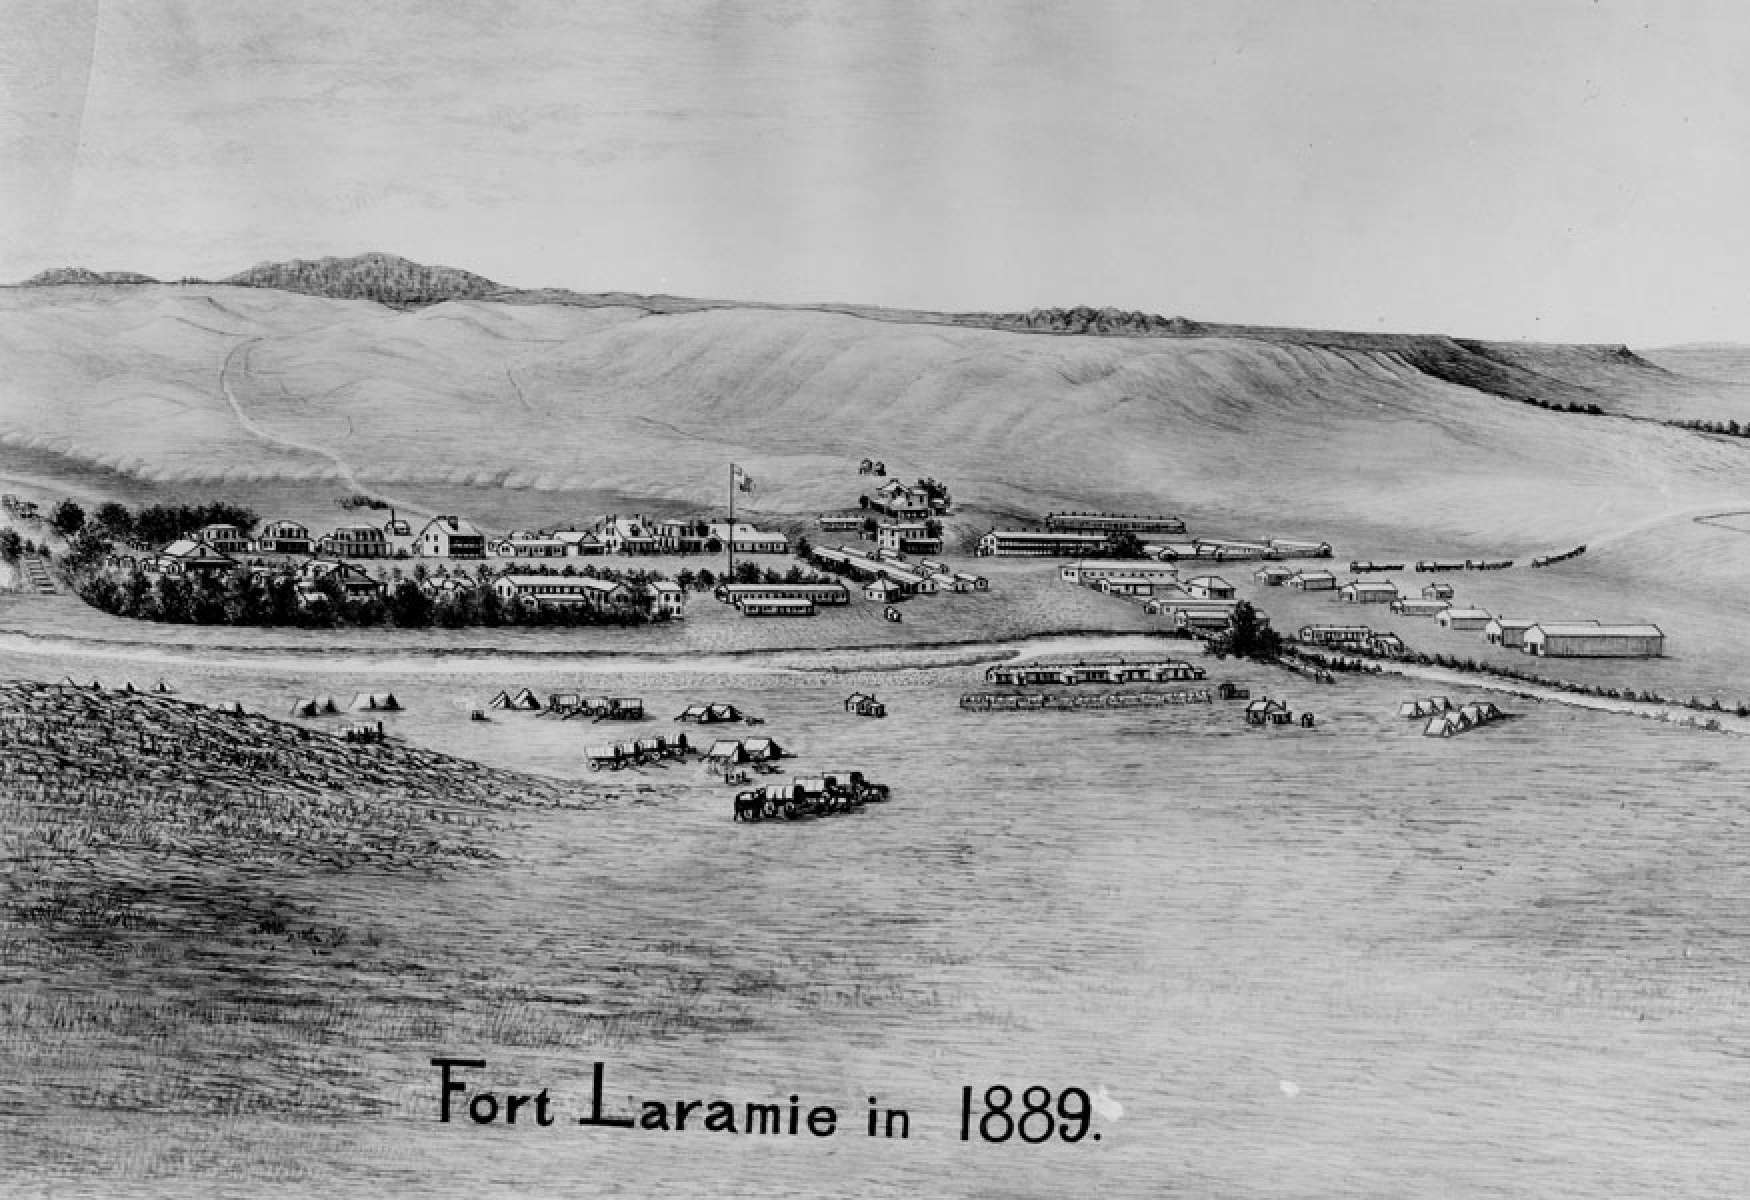 Fort Laramie in 1889